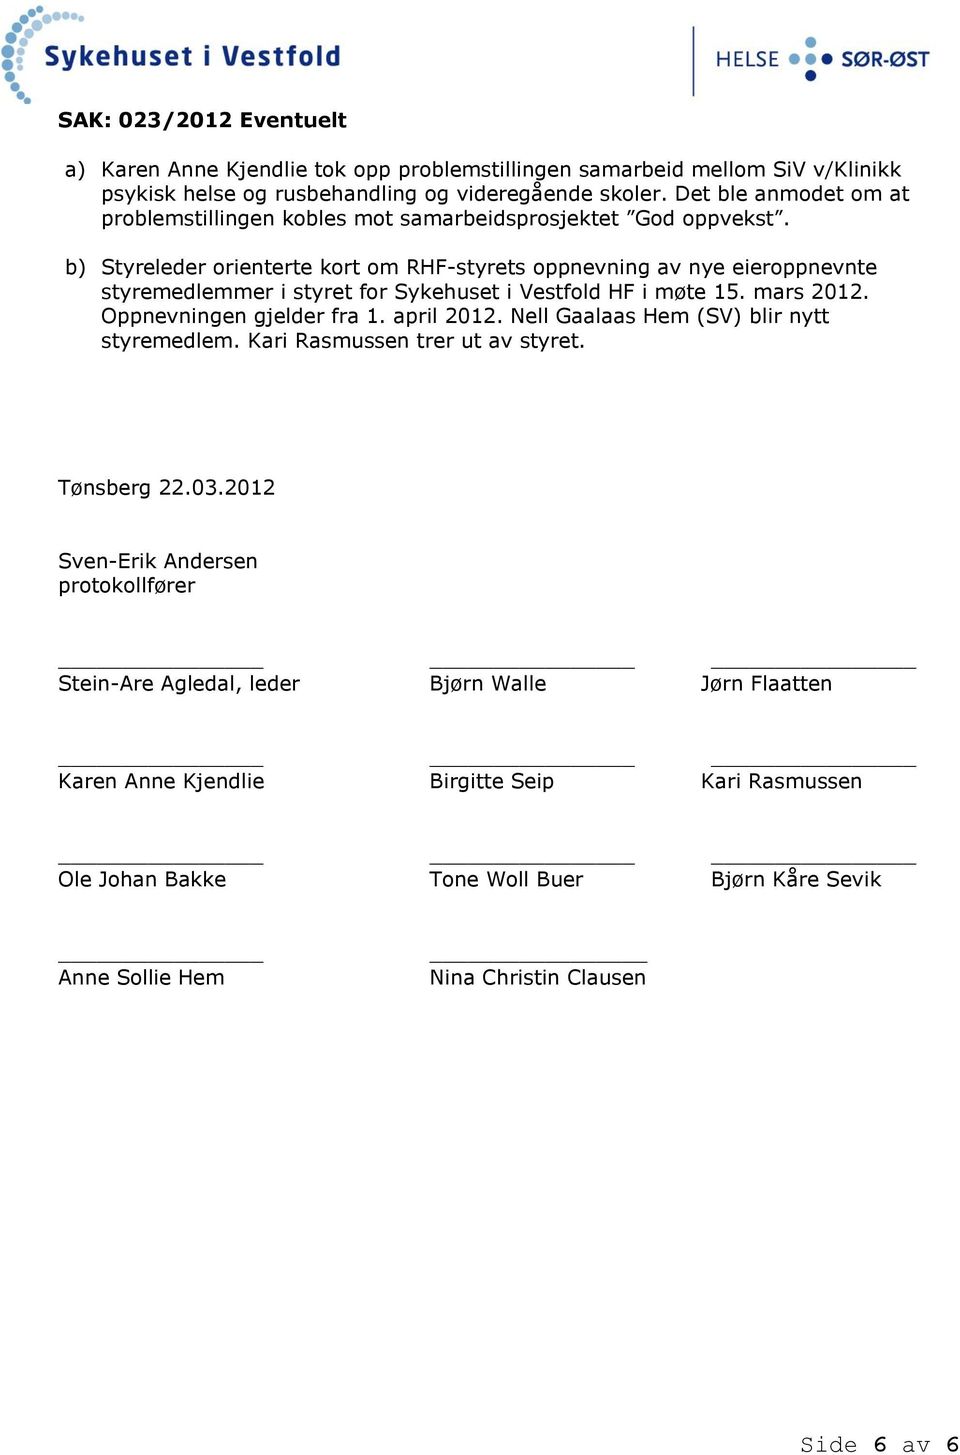 b) Styreleder orienterte kort om RHF-styrets oppnevning av nye eieroppnevnte mer i styret for Sykehuset i Vestfold HF i møte 15. mars 2012. Oppnevningen gjelder fra 1. april 2012.